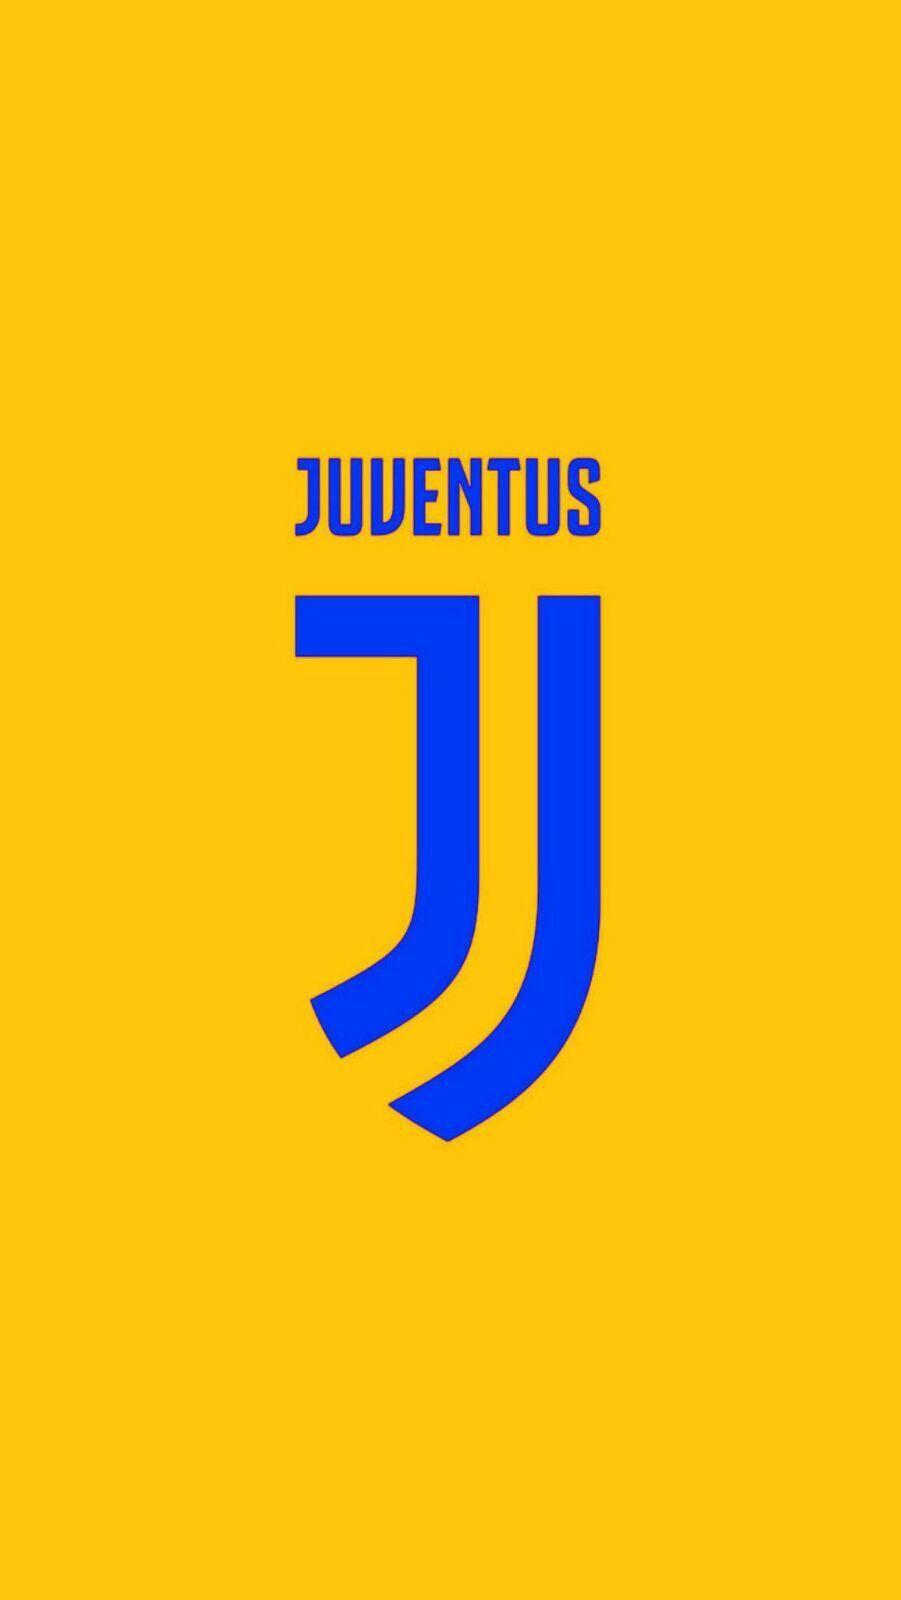 JuVenTus. Juventus fc, Fifa football